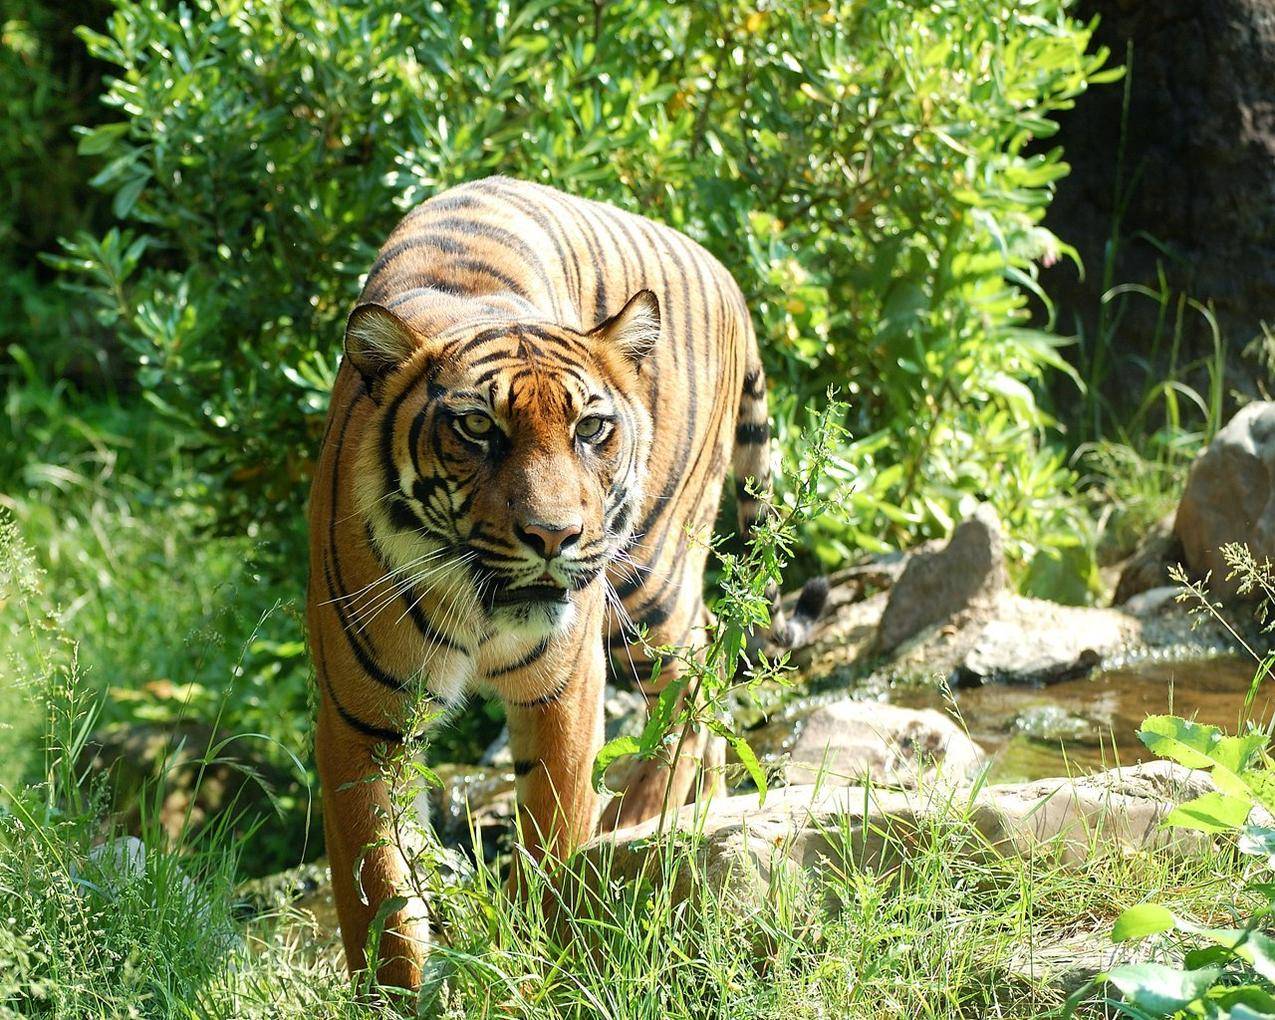 cc0免费可商用动物图片,老虎,野生动物,大猫